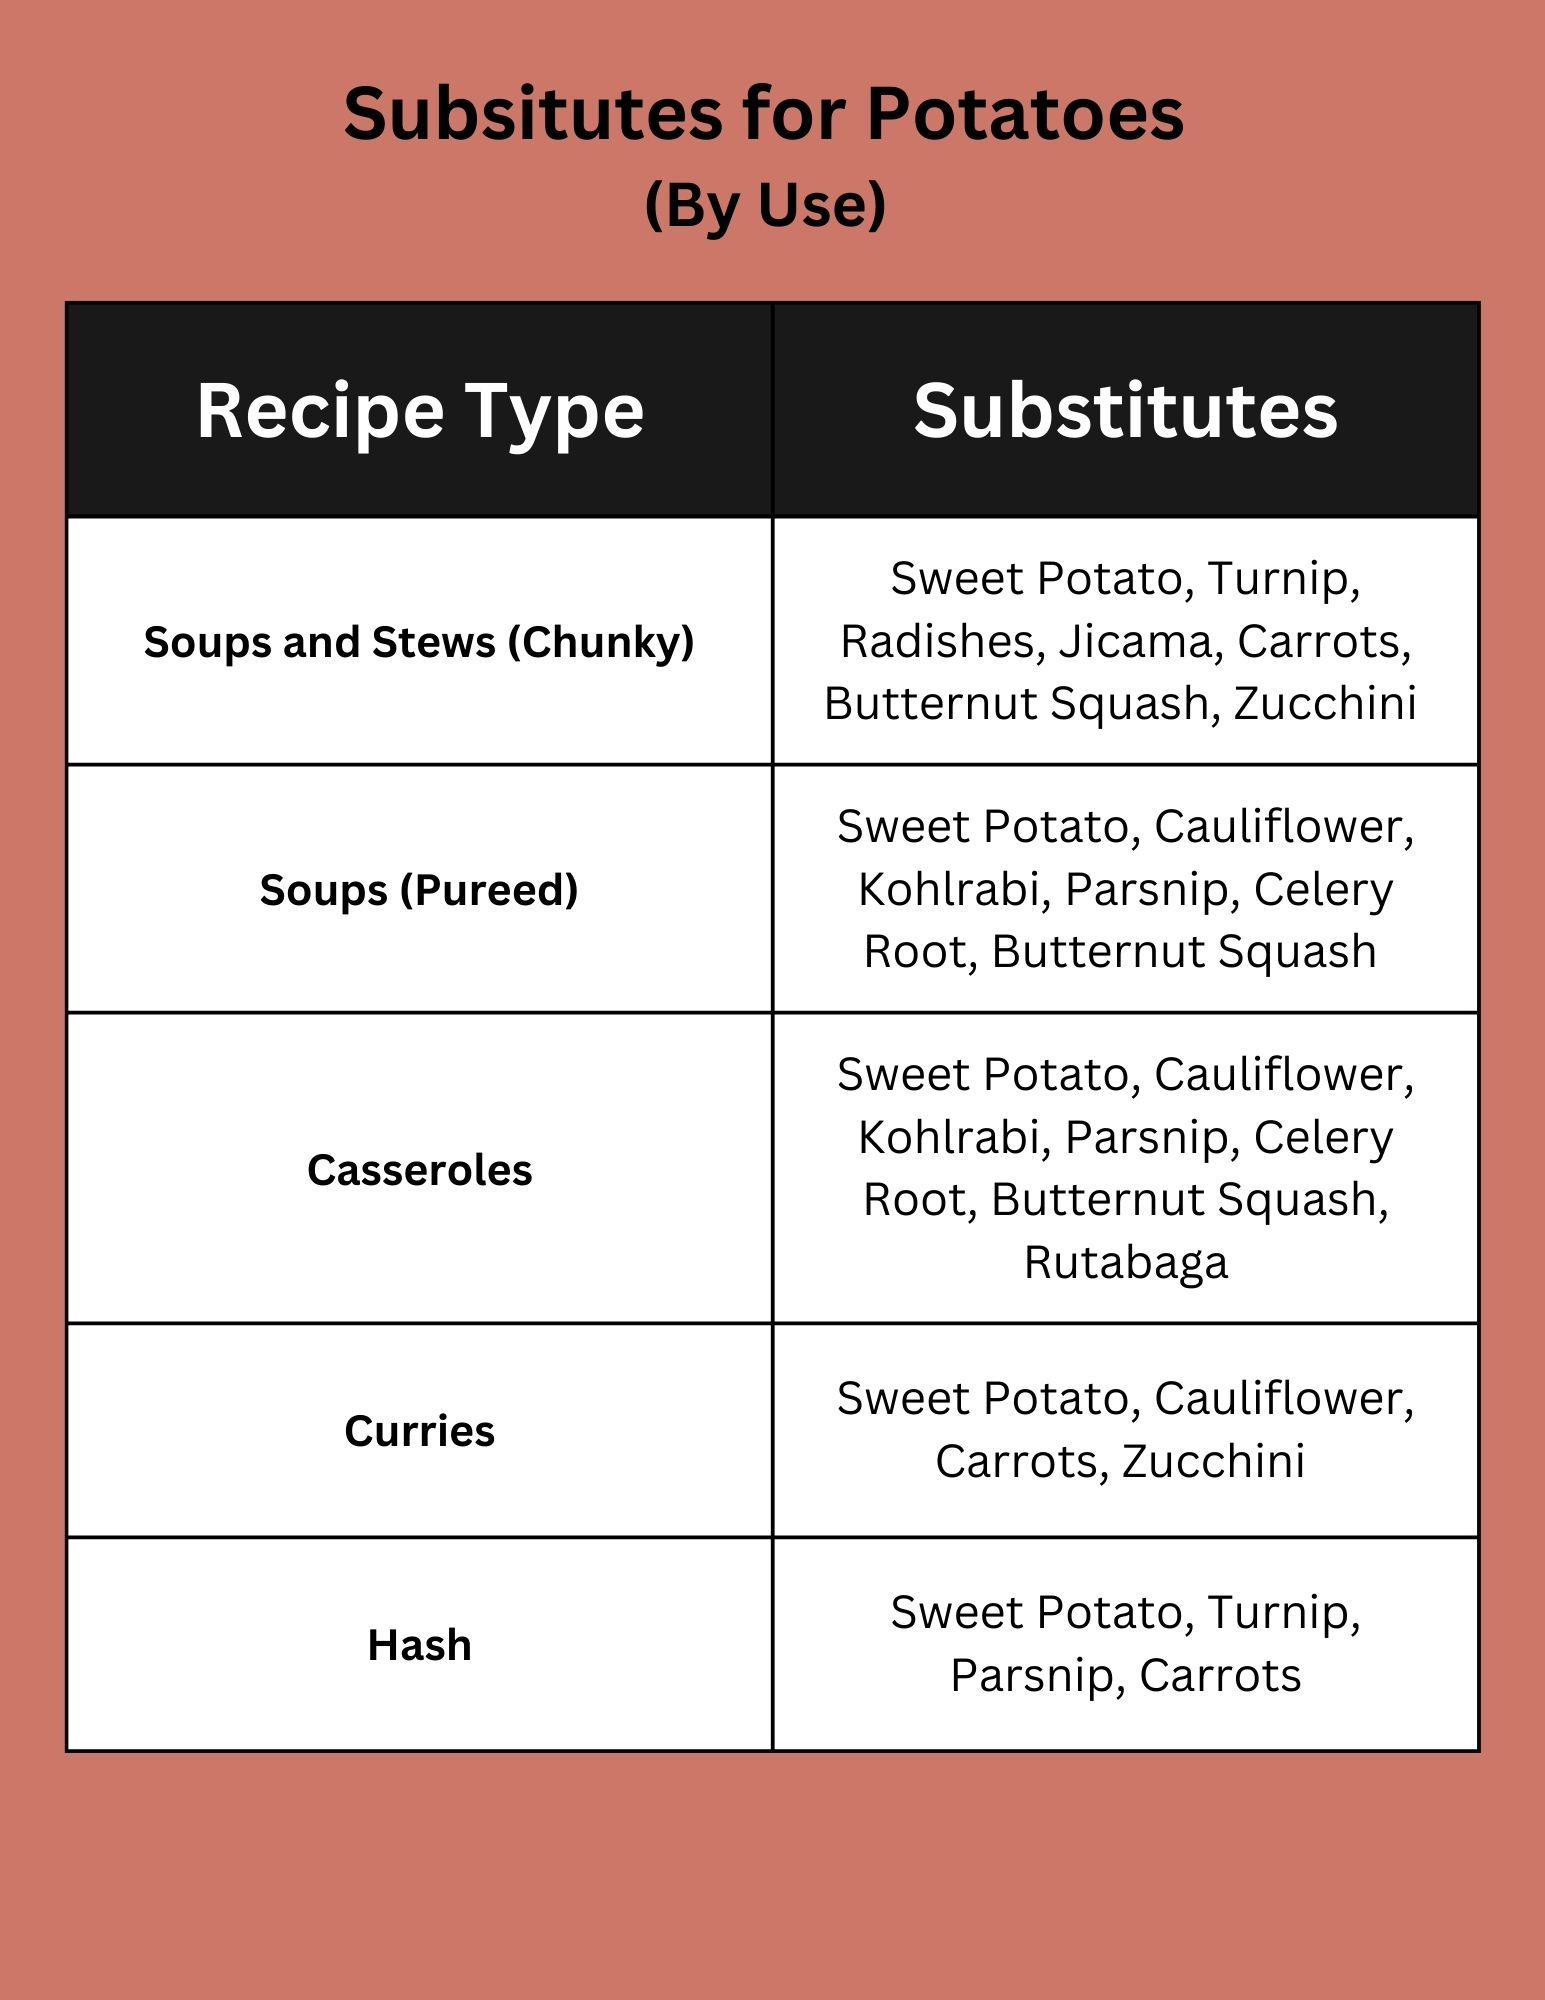 Potato substitutes summary chart.